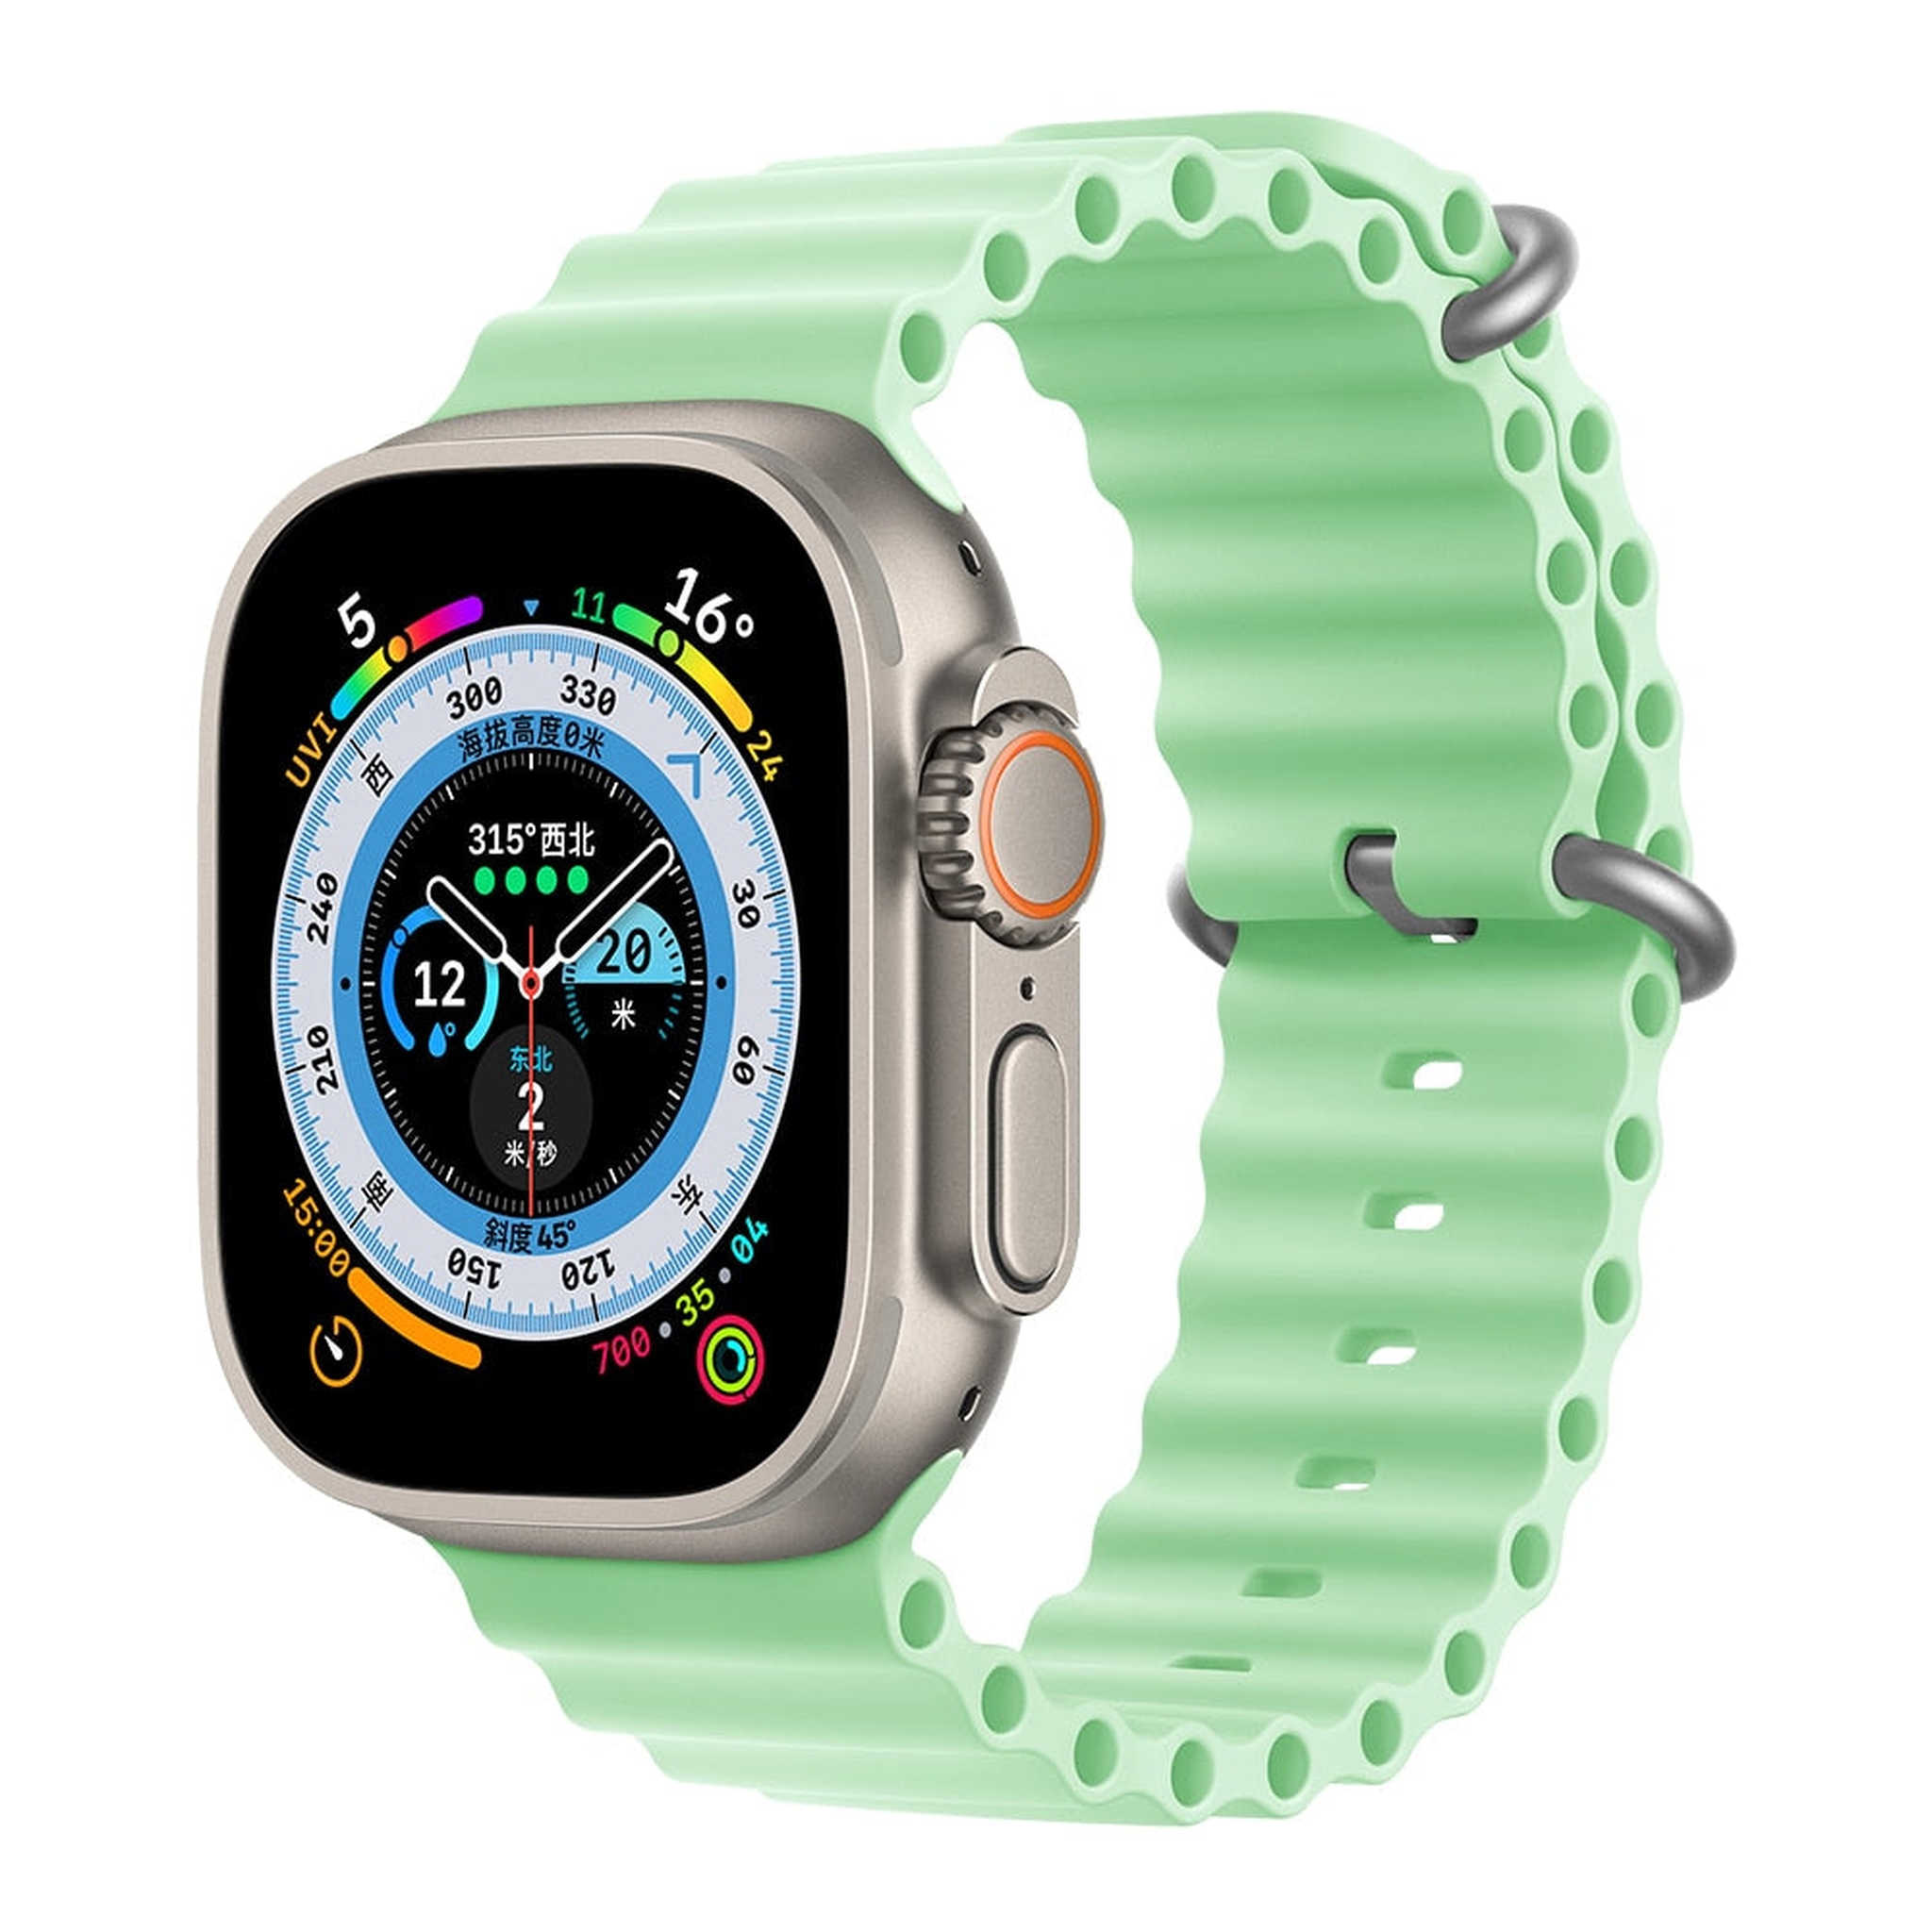 Pulseira para Apple Watch 49MM -Alpina Loop- Preta - Gshield